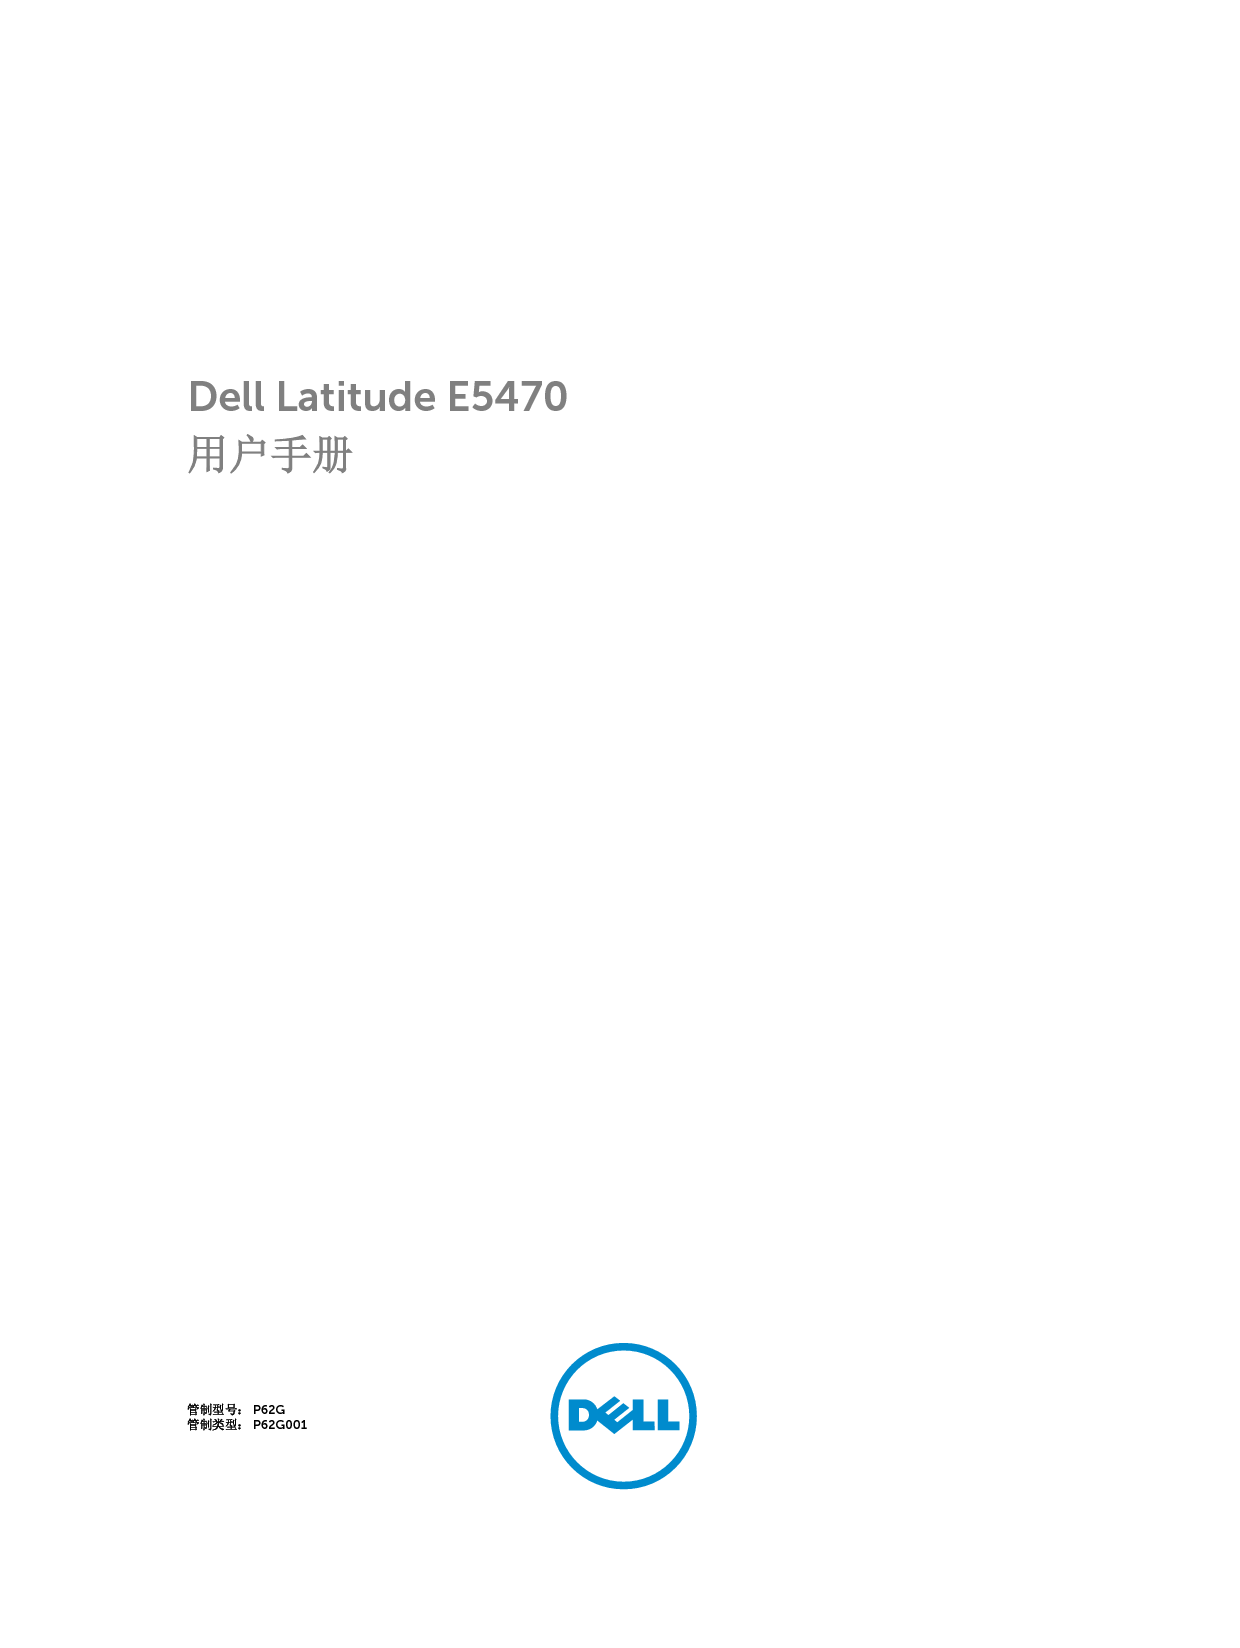 戴尔 Dell Latitude E5470 用户手册 封面